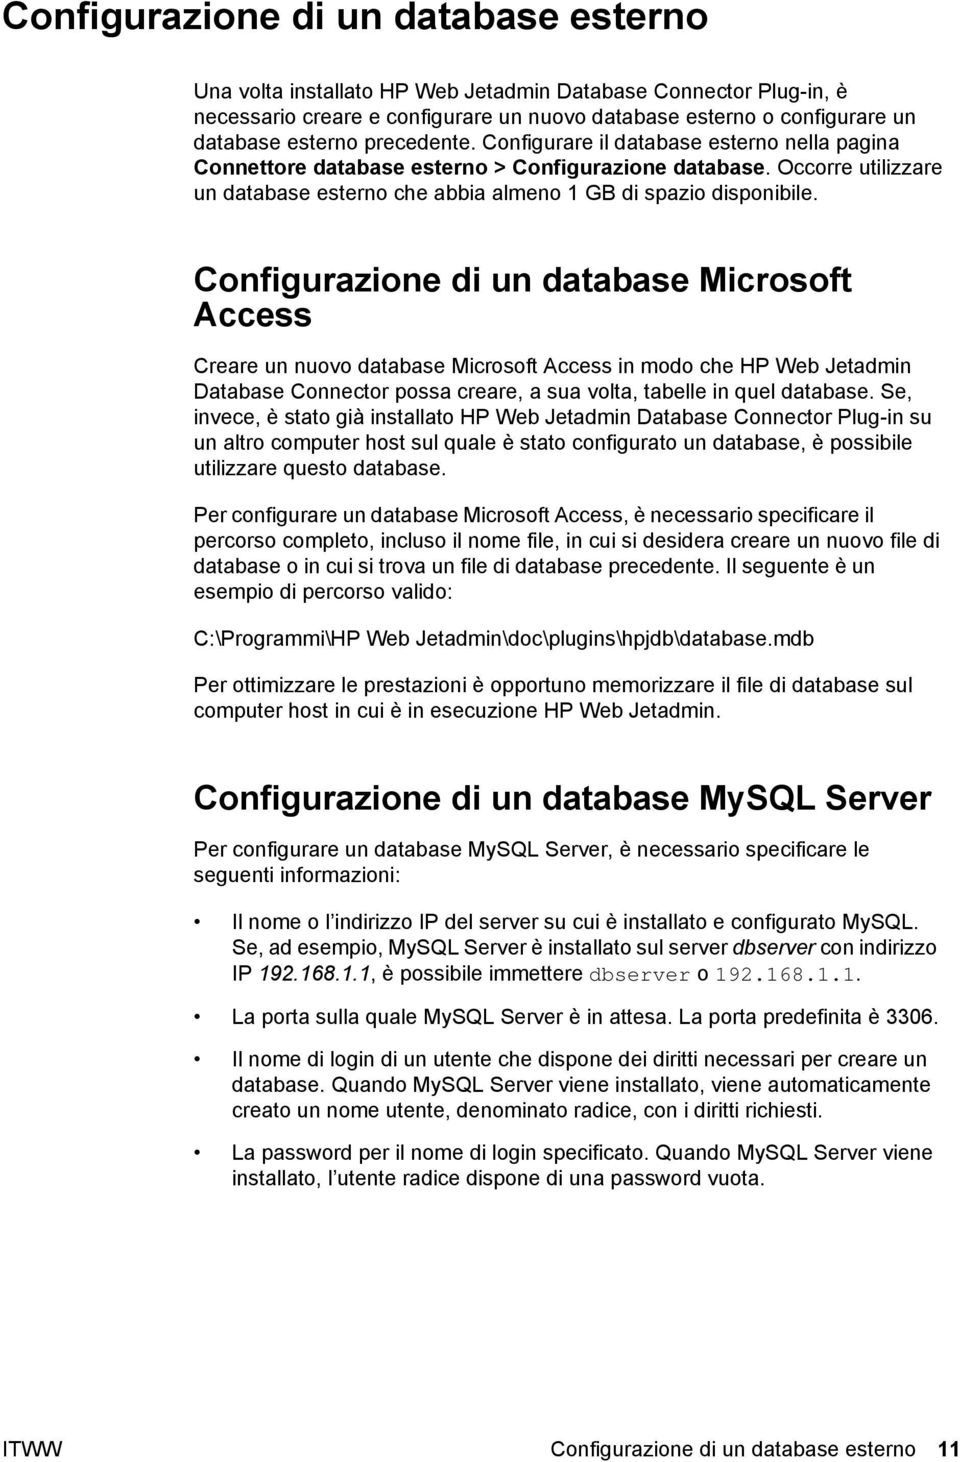 Configurazione di un database Microsoft Access Creare un nuovo database Microsoft Access in modo che HP Web Jetadmin Database Connector possa creare, a sua volta, tabelle in quel database.